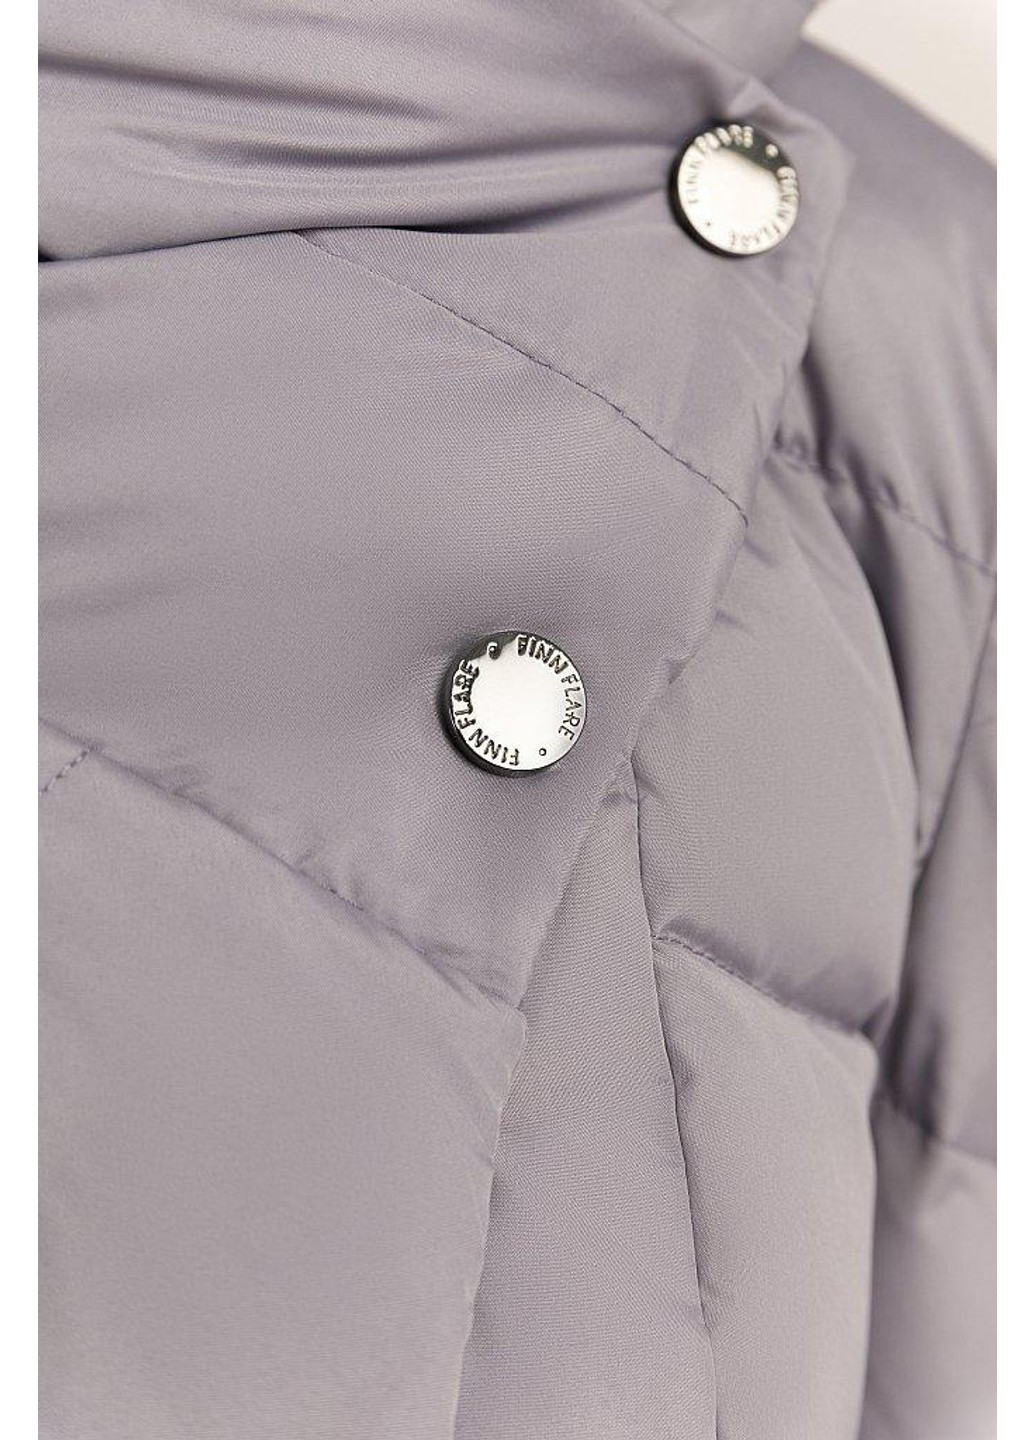 Сіра зимня зимова куртка w19-11005-208 Finn Flare